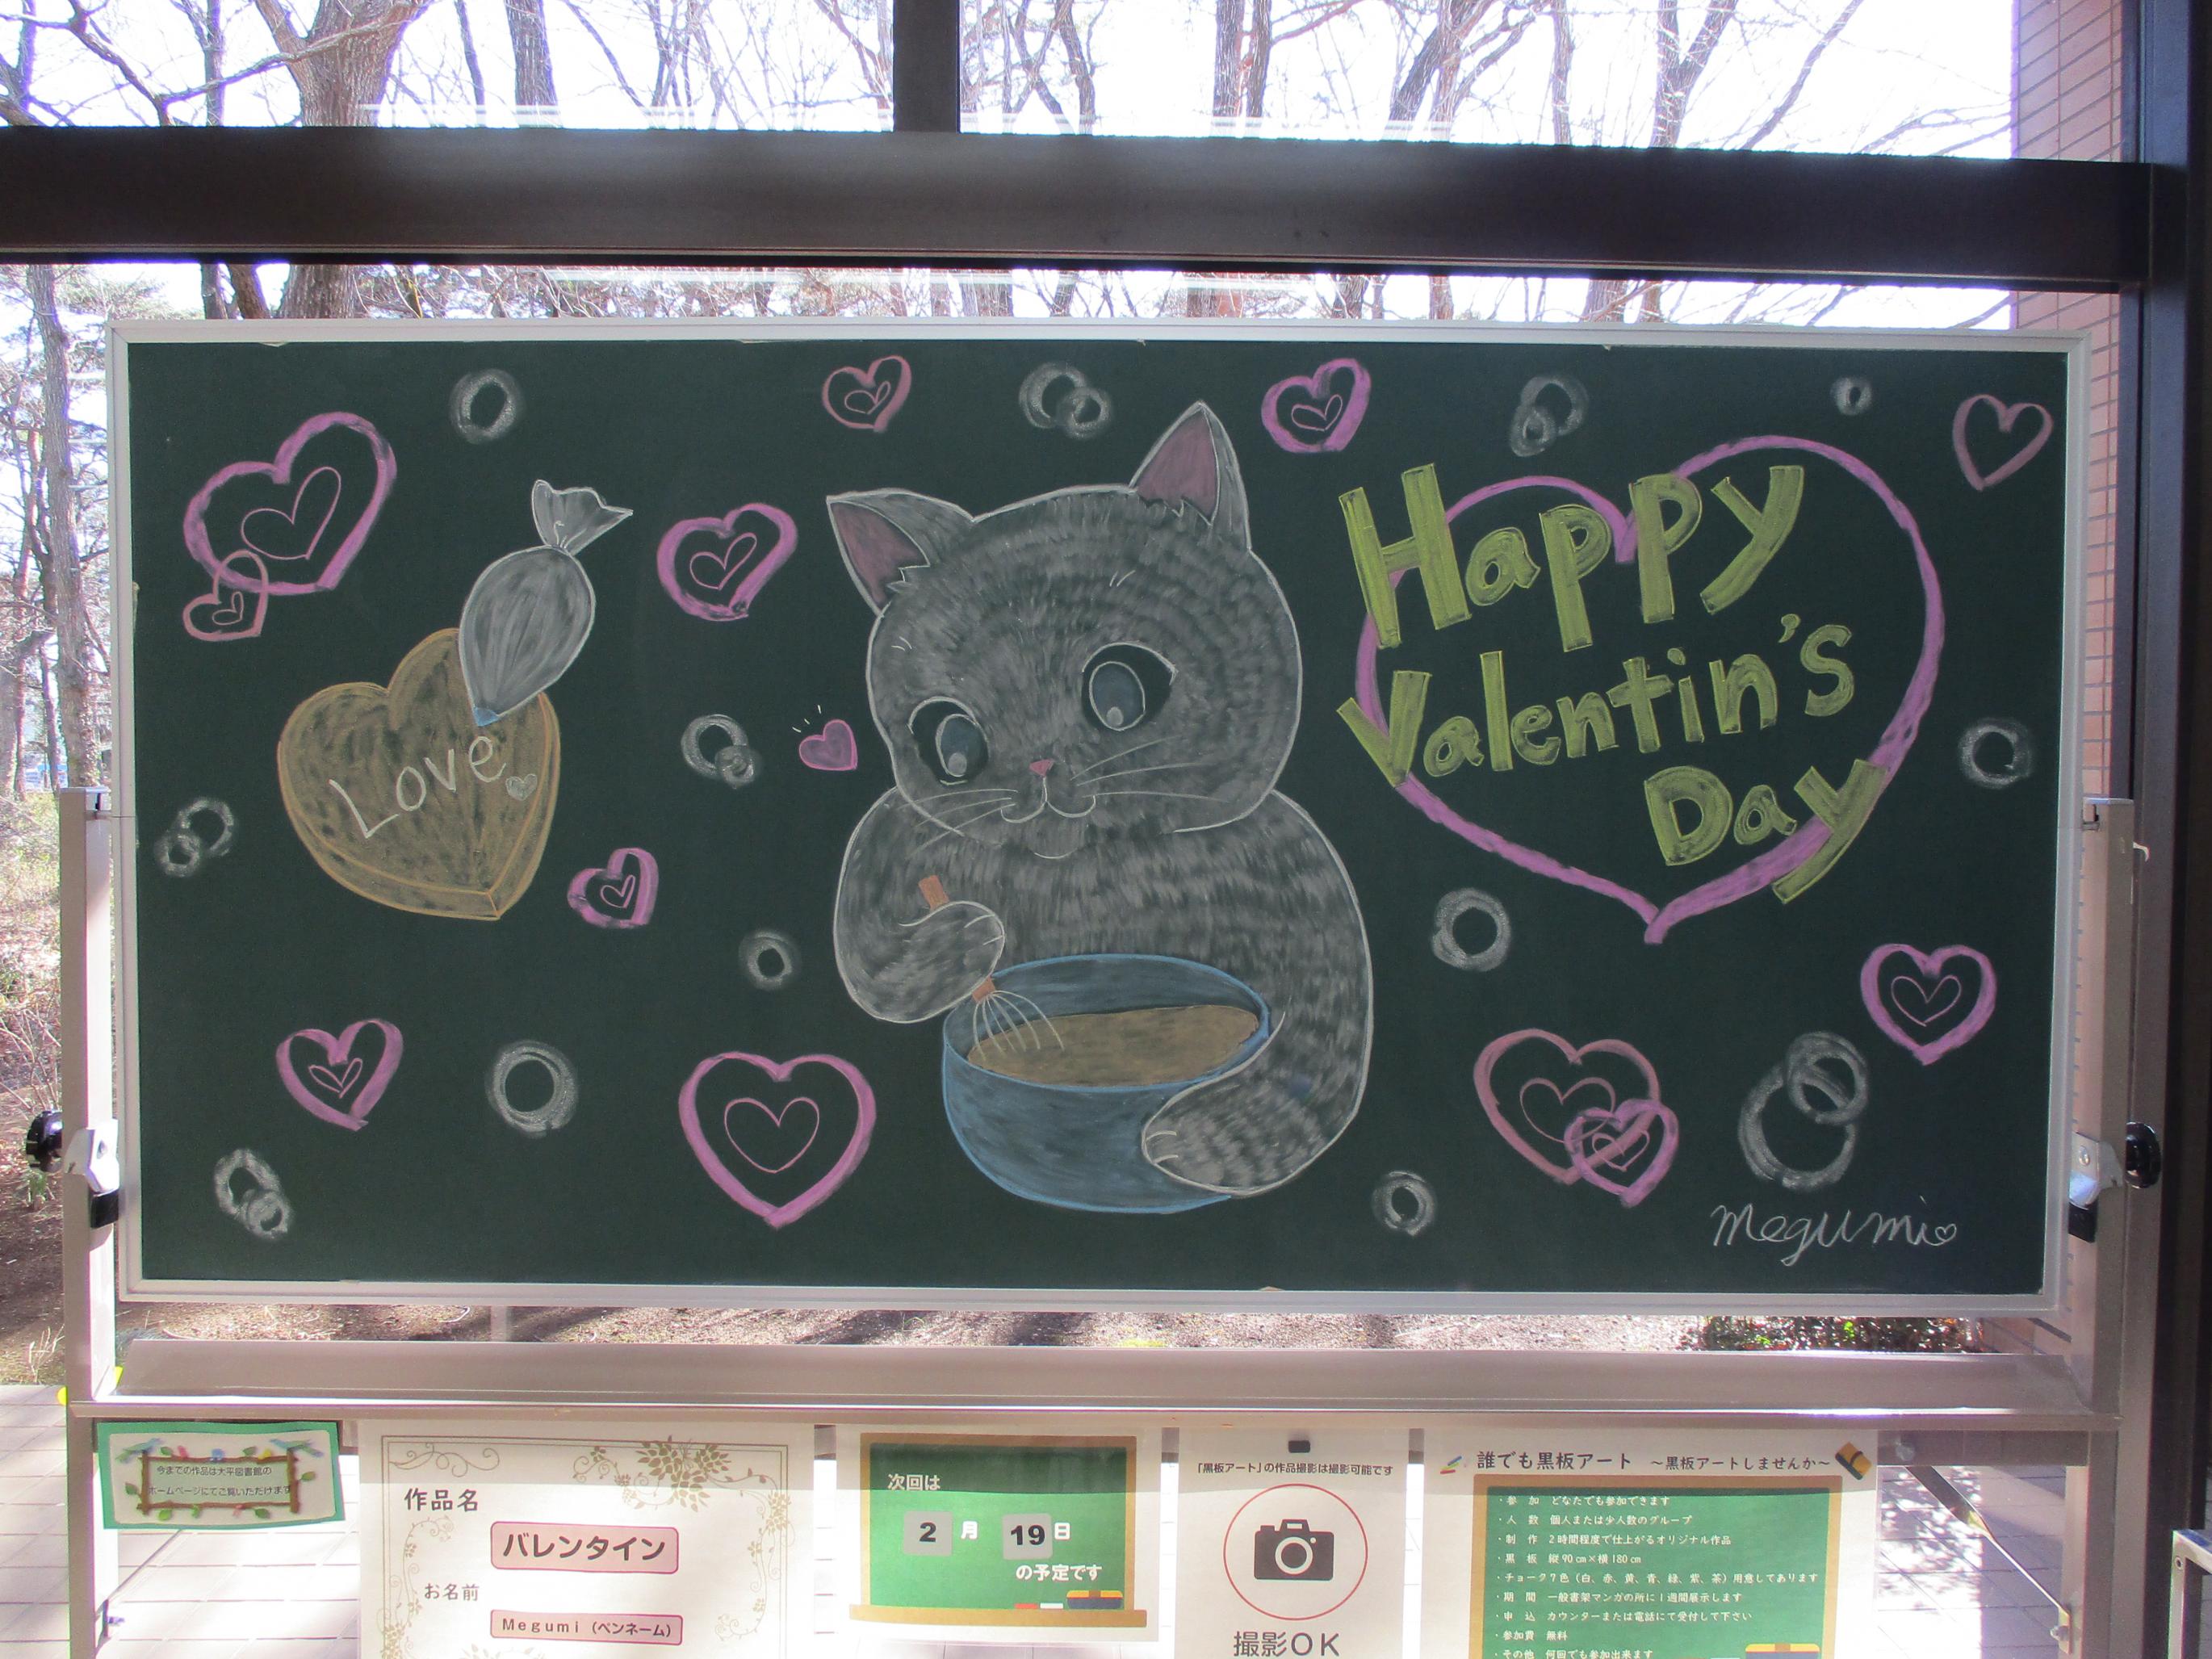 「バレンタイン／Megumi様」黒板アート作品の写真